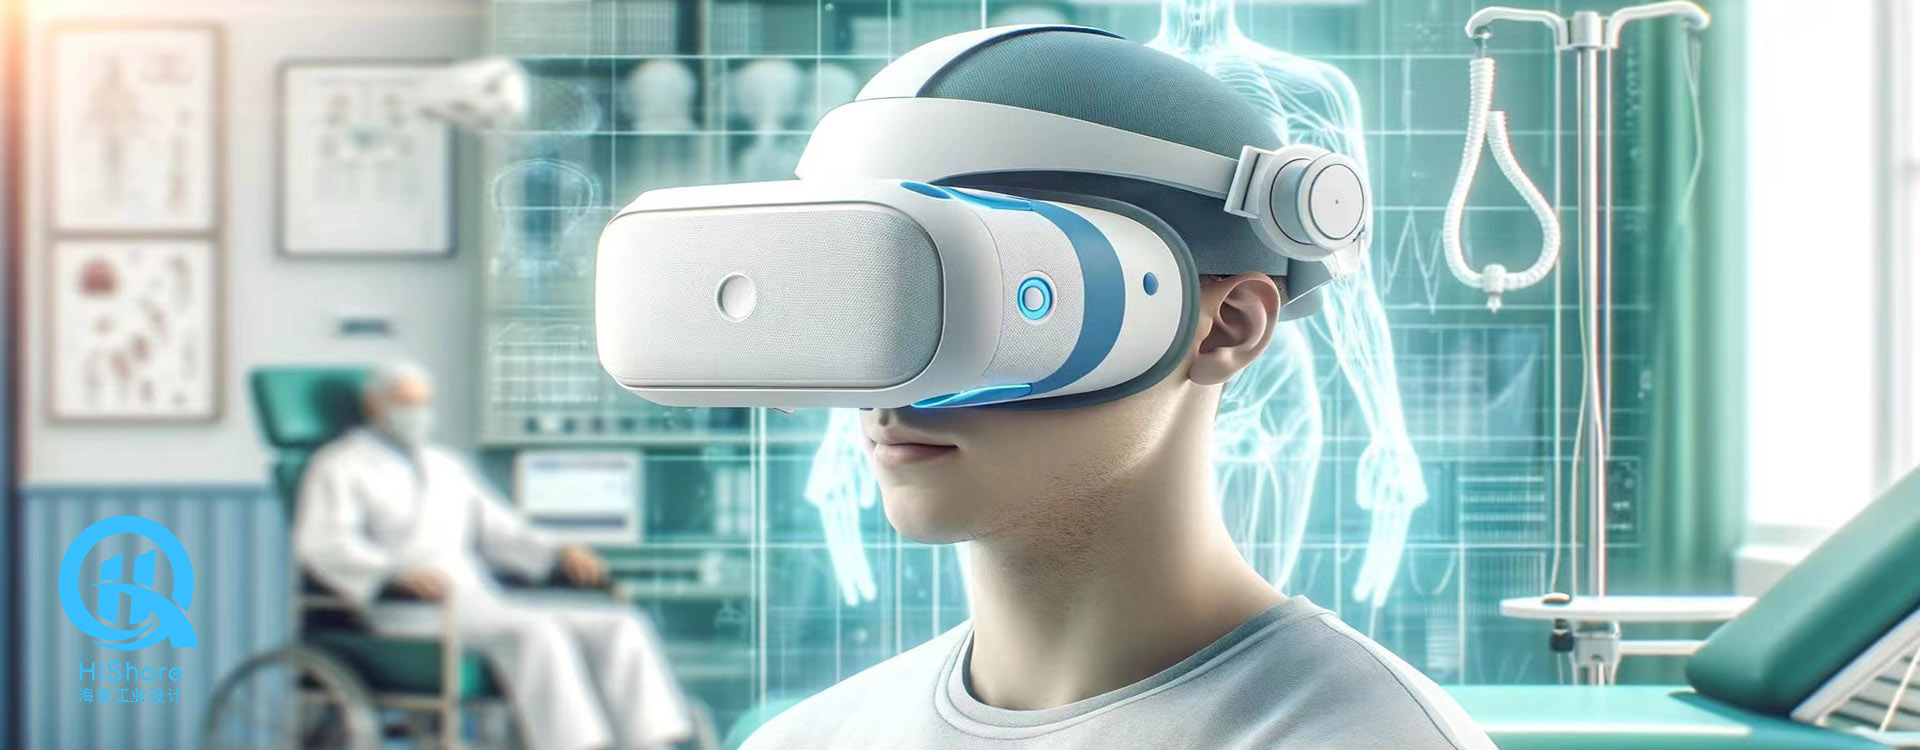 VR康复训练仪的工业设计：开启医疗康复新篇章